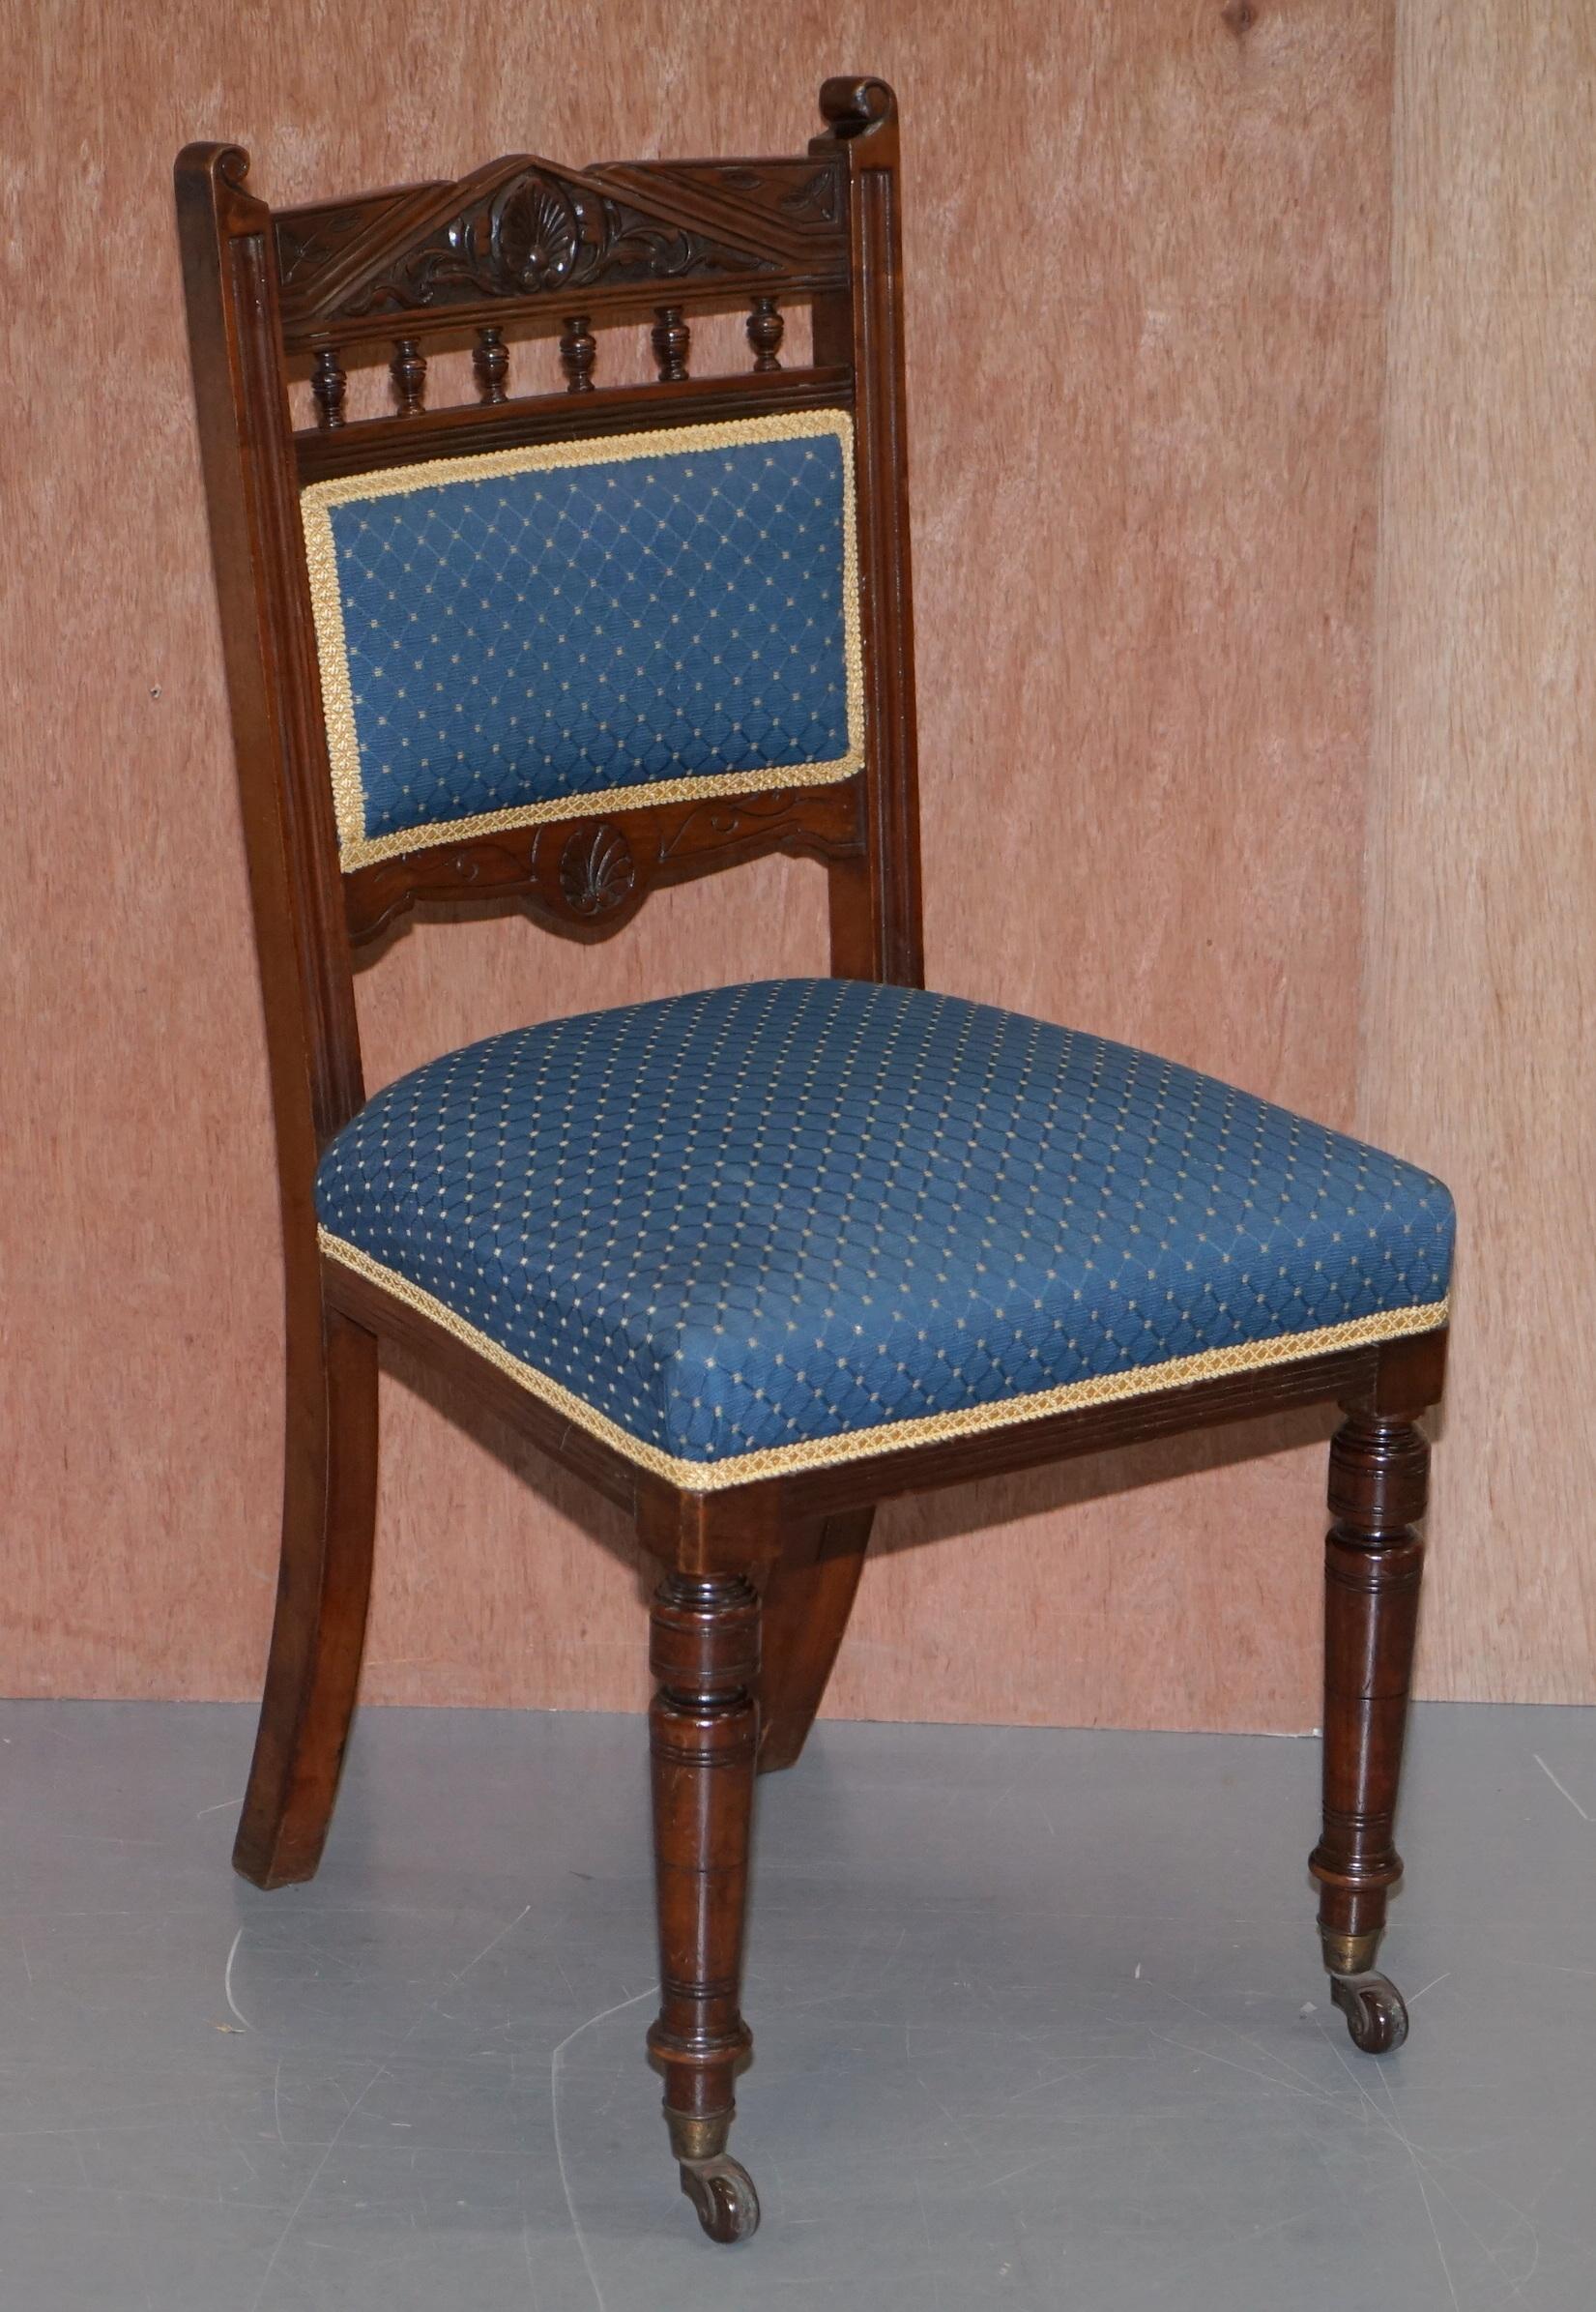 Wir freuen uns, Ihnen diese schöne Garnitur von vier originalen Esszimmerstühlen aus massivem Mahagoni von Maple & Co. anbieten zu können

Diese Stühle sind Teil einer Suite

Jeder Stuhl ist mit Porzellanrollen an der Vorderseite ausgestattet,